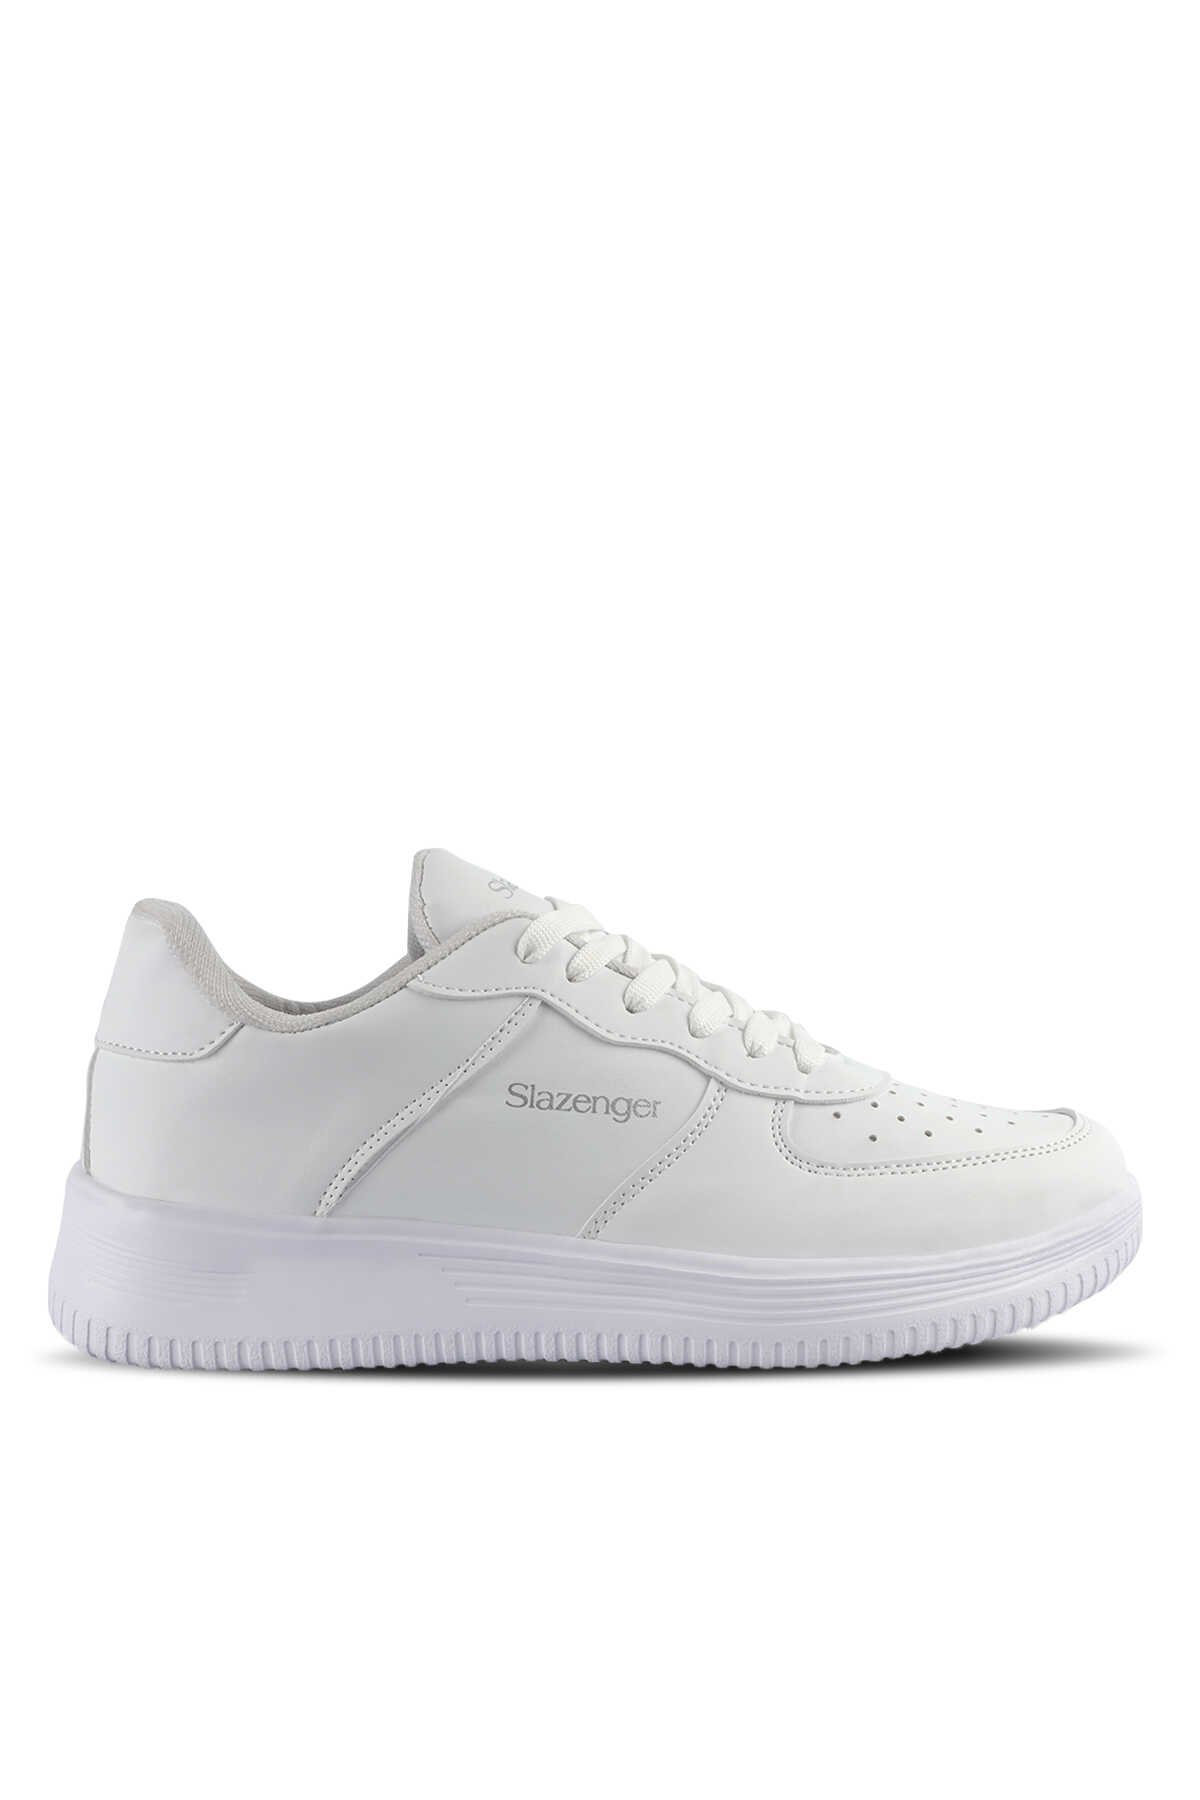 Slazenger - Slazenger EKUA Sneaker Erkek Ayakkabı Beyaz